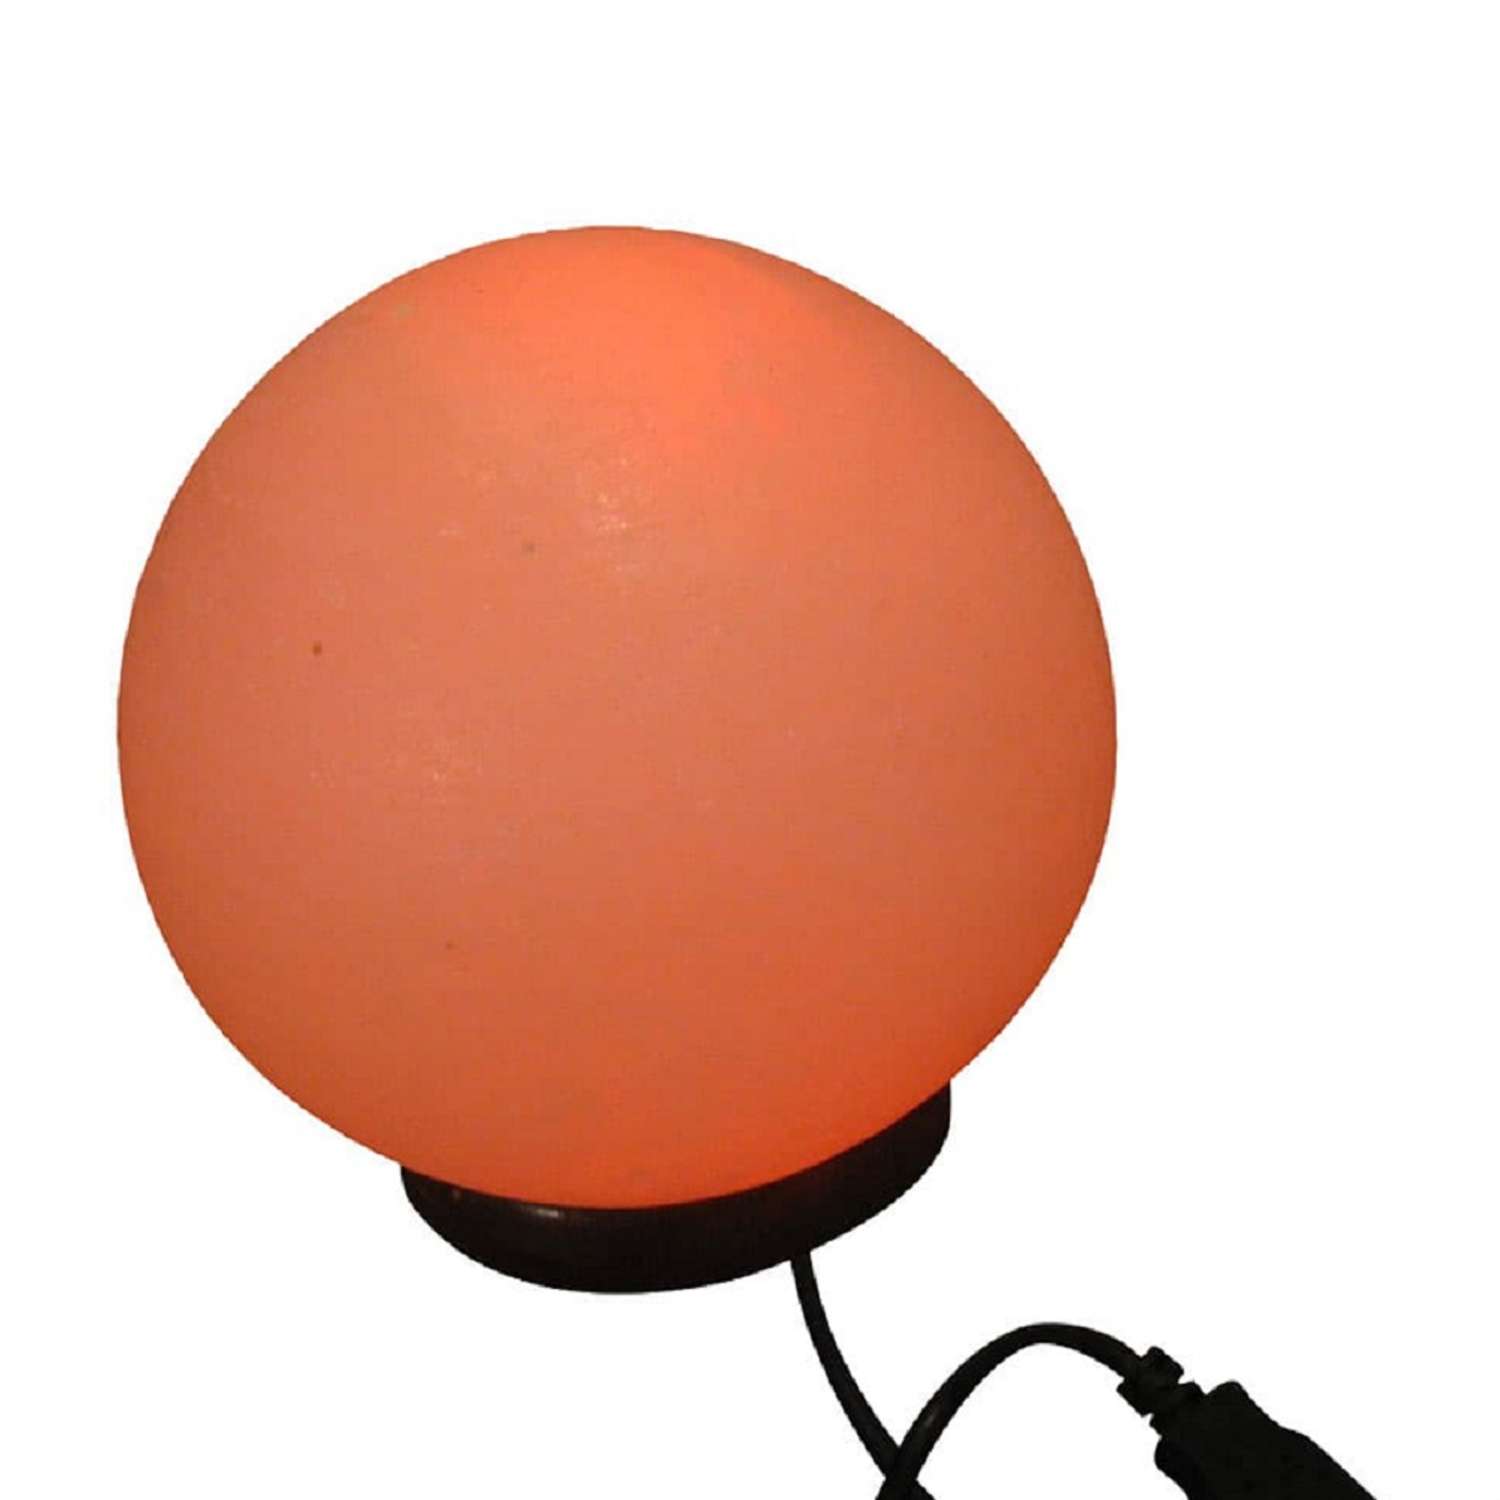 Солевая лампа Wonder Life Фен-Шуй 400-700г питание от USB Гималайская соль - фото 1